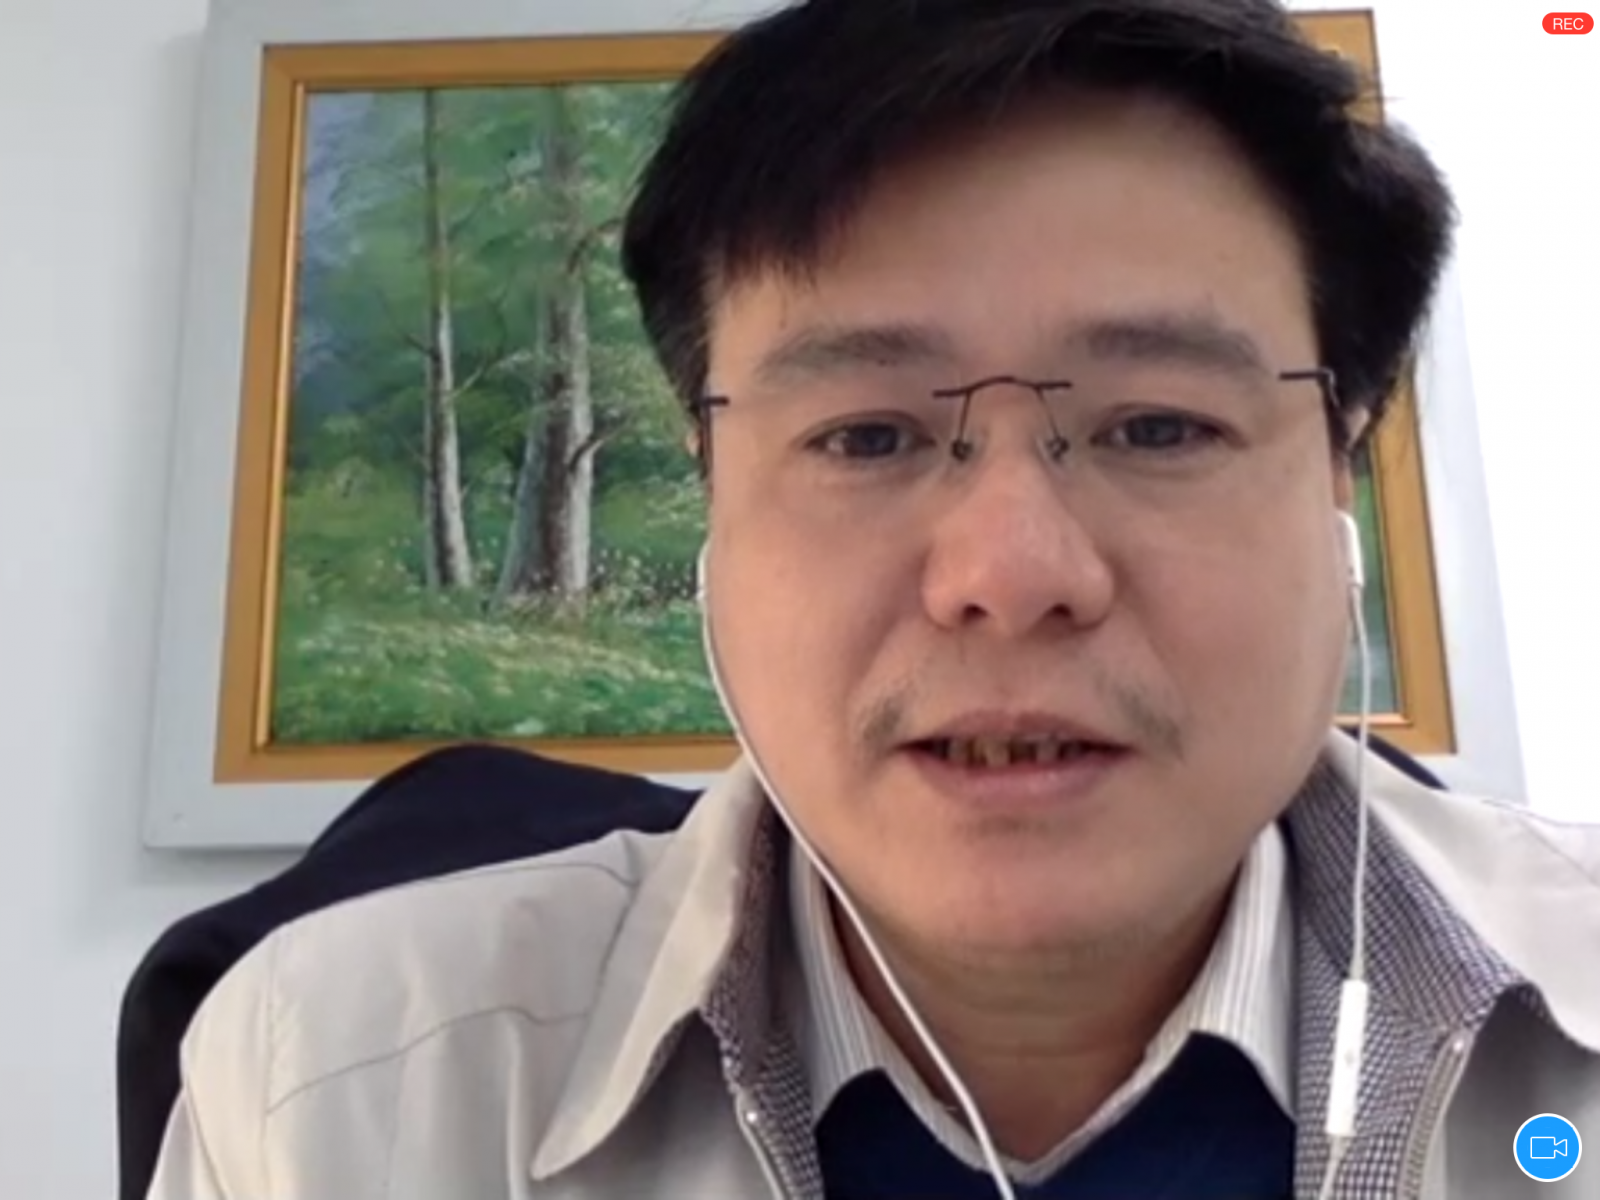 Ts. Đàm Quang Thắng - Chủ tịch Hội đồng VSMA, Tổng Giám đốc Công ty TNHH Agricare Việt Nam